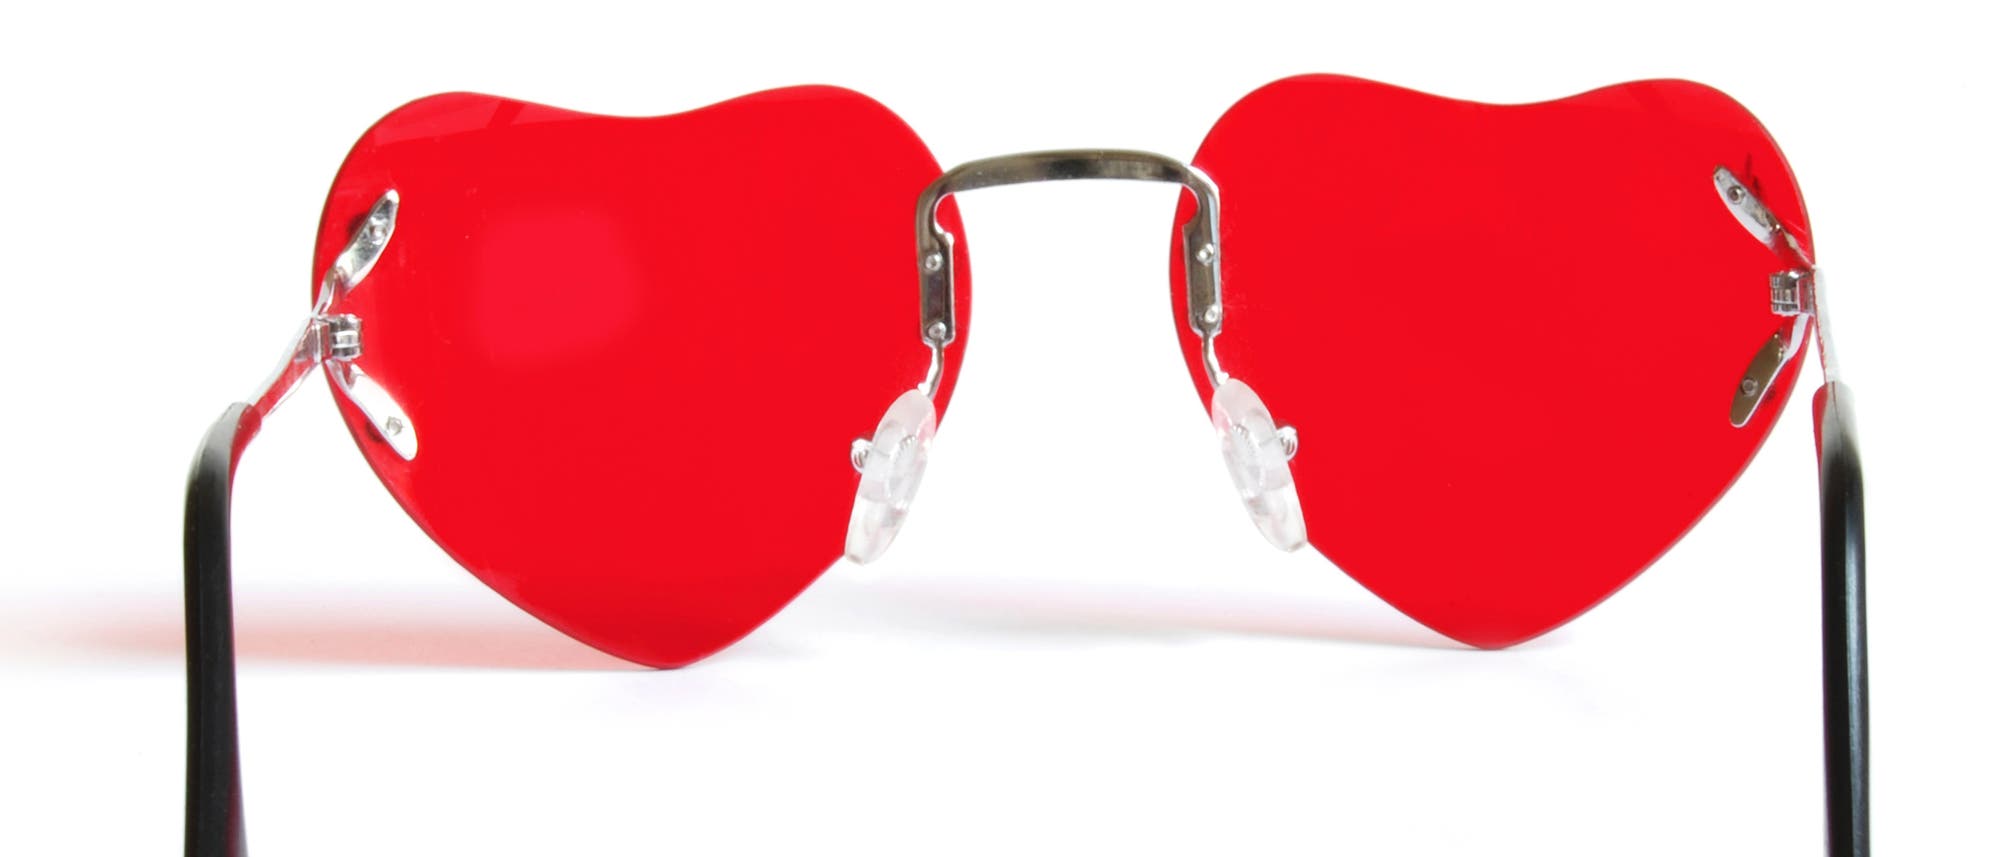 Eine Sonnenbrille mit roten Gläsern, die die Form eines Herzen haben.